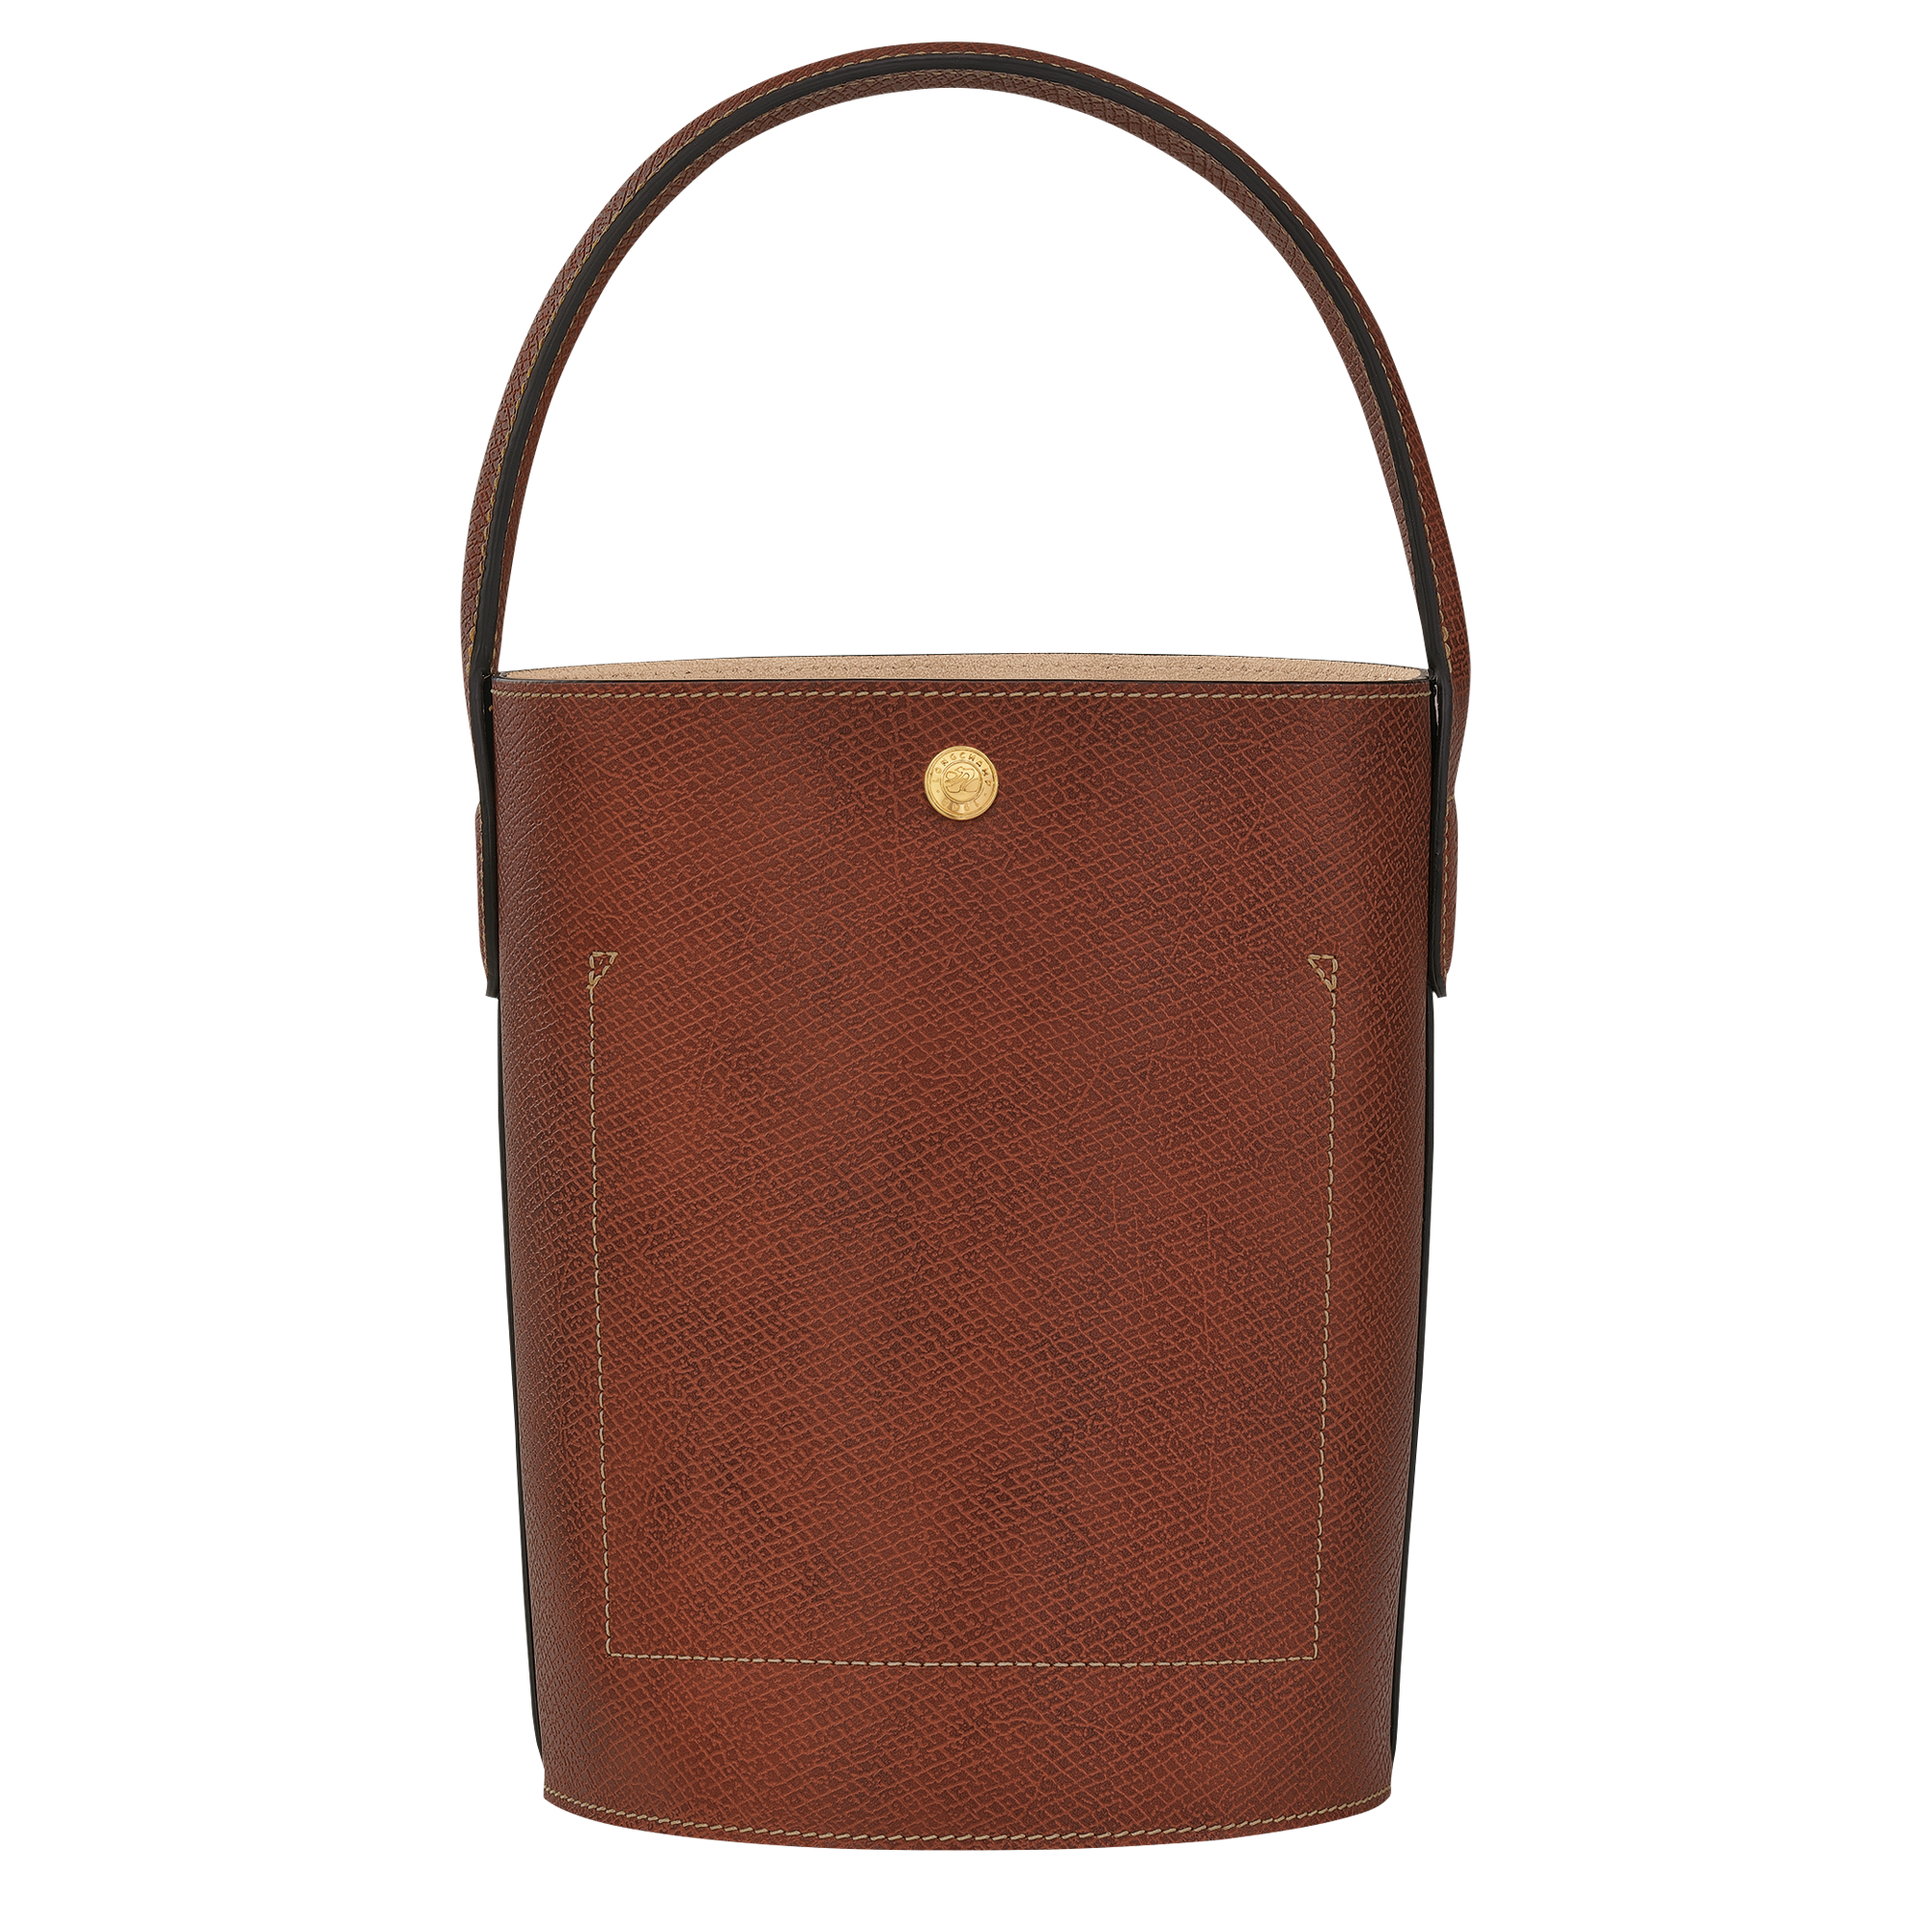 Longchamp ÉPURE - Bucket bag S in Brown - 4 (SKU: 10161HYZ035)